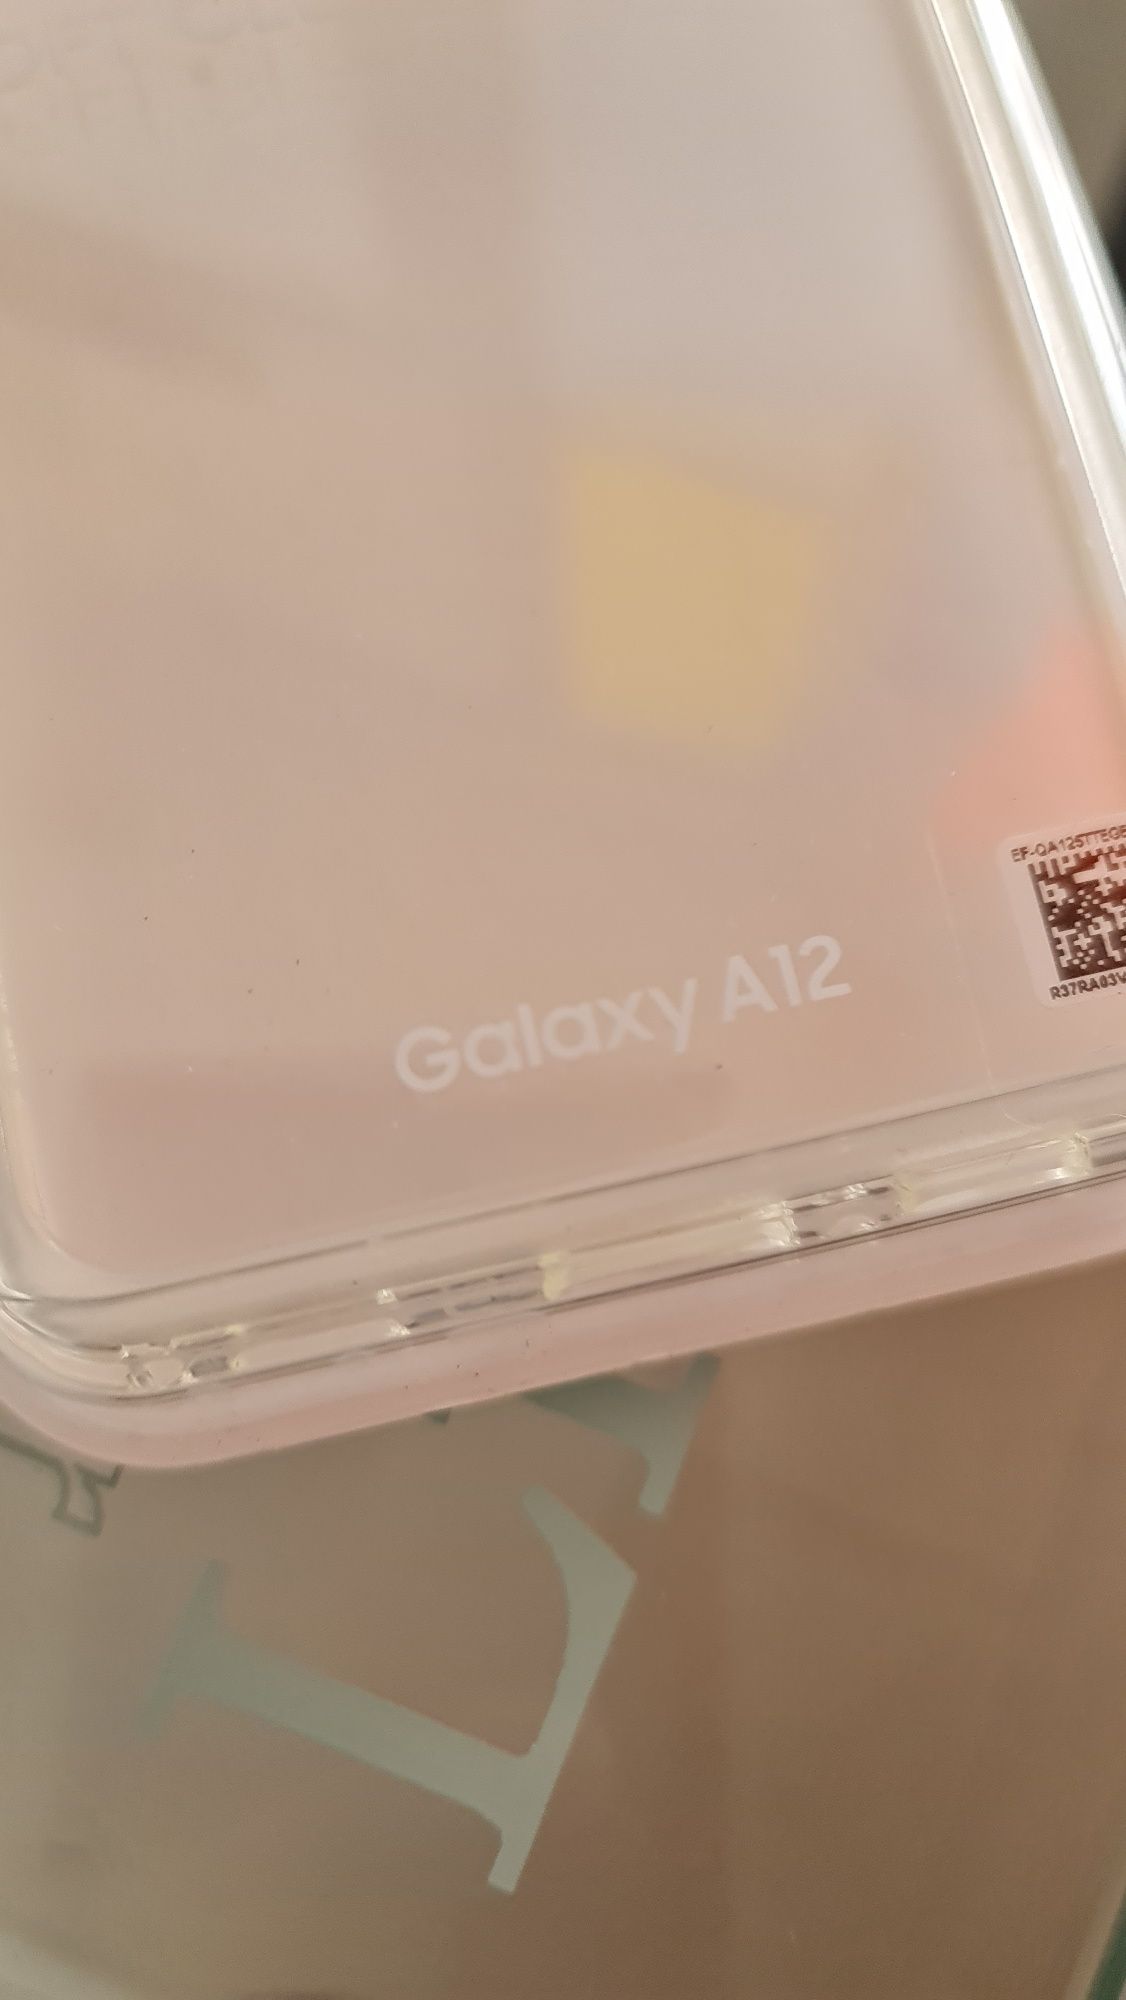 Capa transparente original Samsung A12